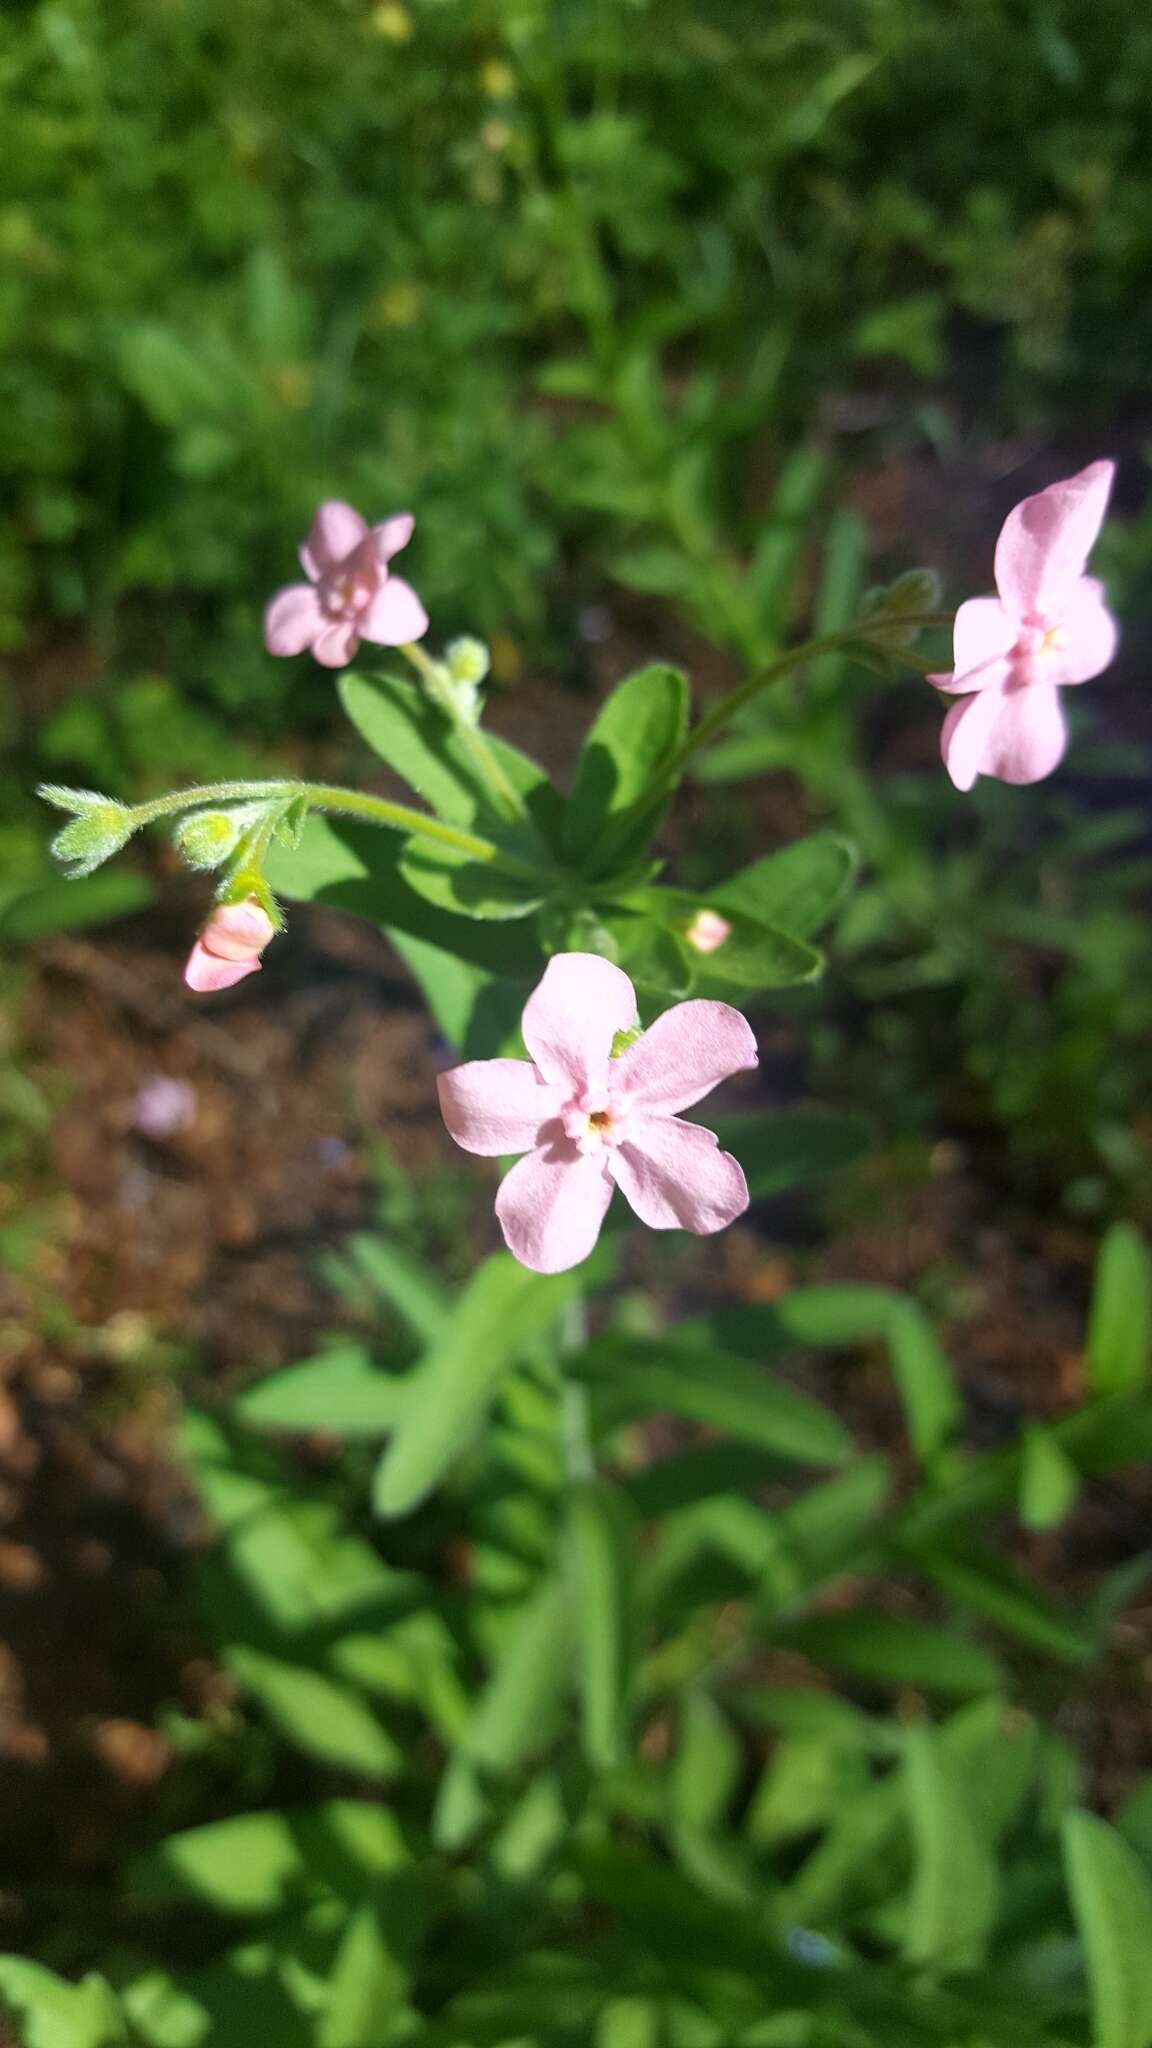 Image of pink stickseed